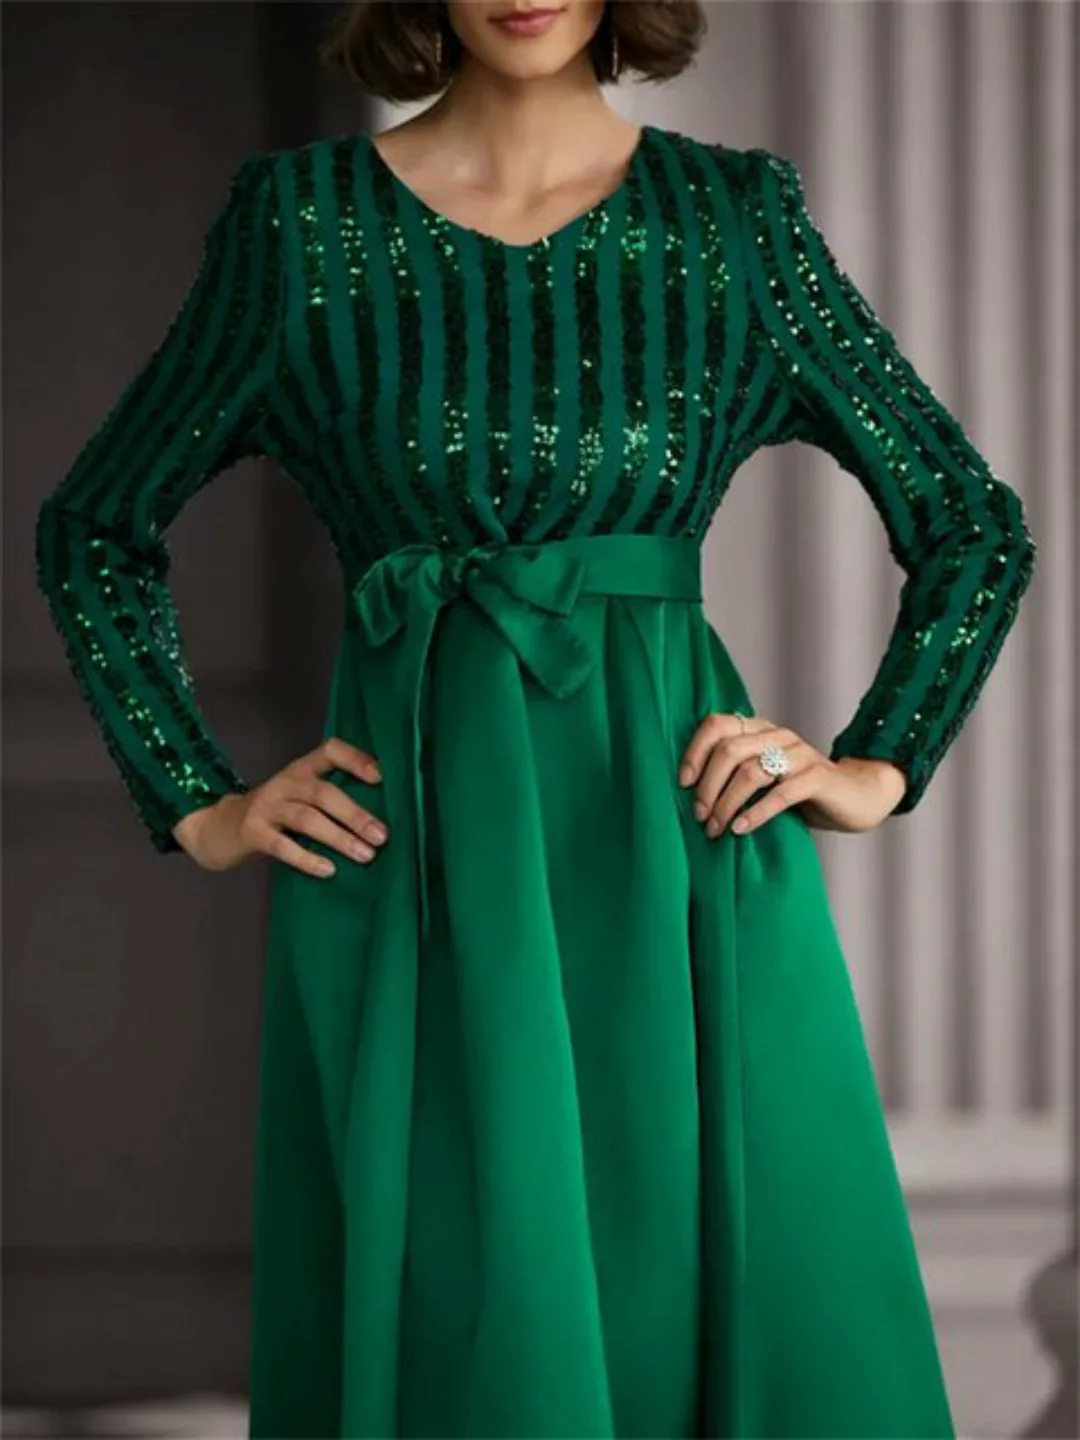 RUZU UG Abendkleid Grünes Bankett-Maxi-Abendkleid mit mittelhohem Bund und günstig online kaufen